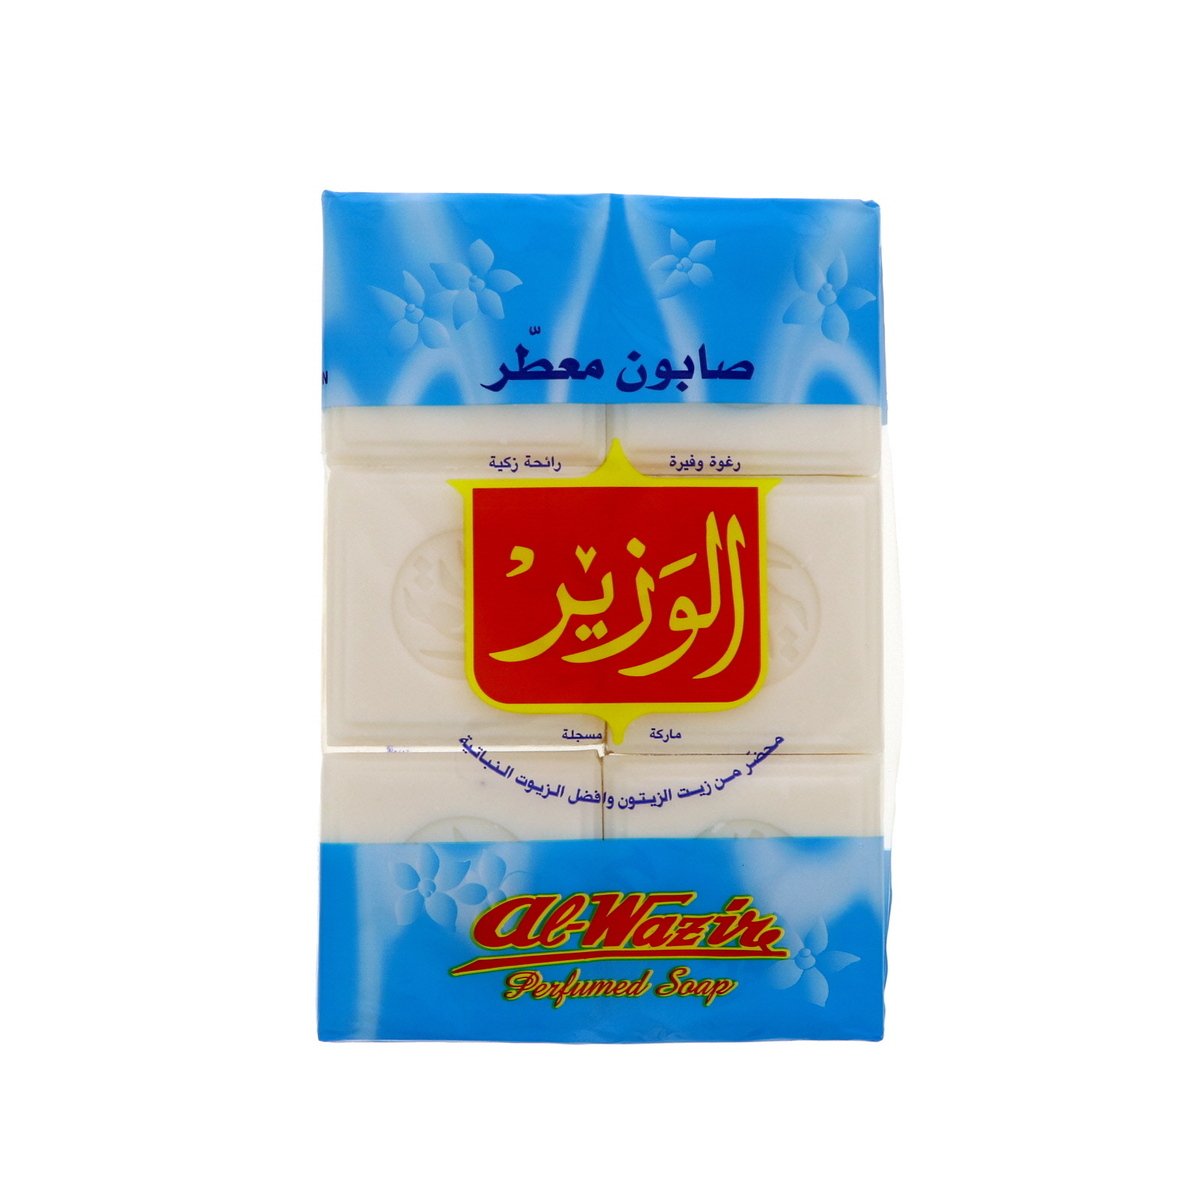 Al Wazir Perfumed Soap 900g